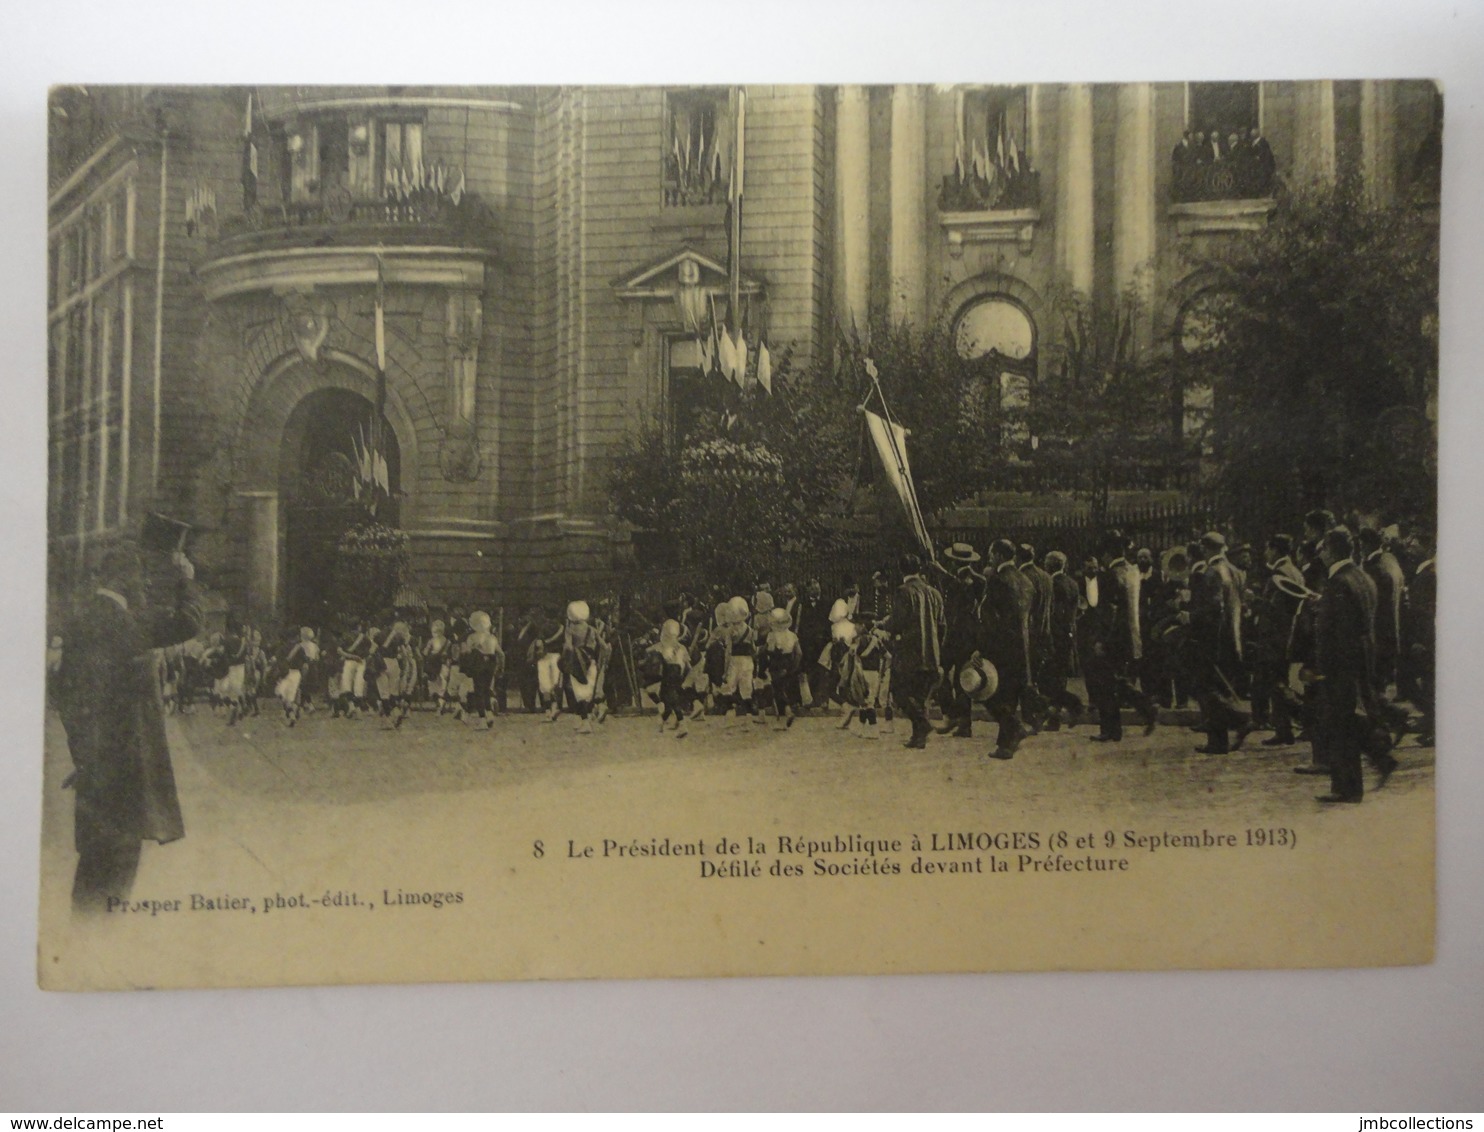 LE PRESIDENT DE LA REPUBLIQUE A LIMOGES 8 ET 9 SEPTEMBRE 1913 DEFILE DES SOCIETES DEVANT LA PREFECTURE N°8 - Limoges